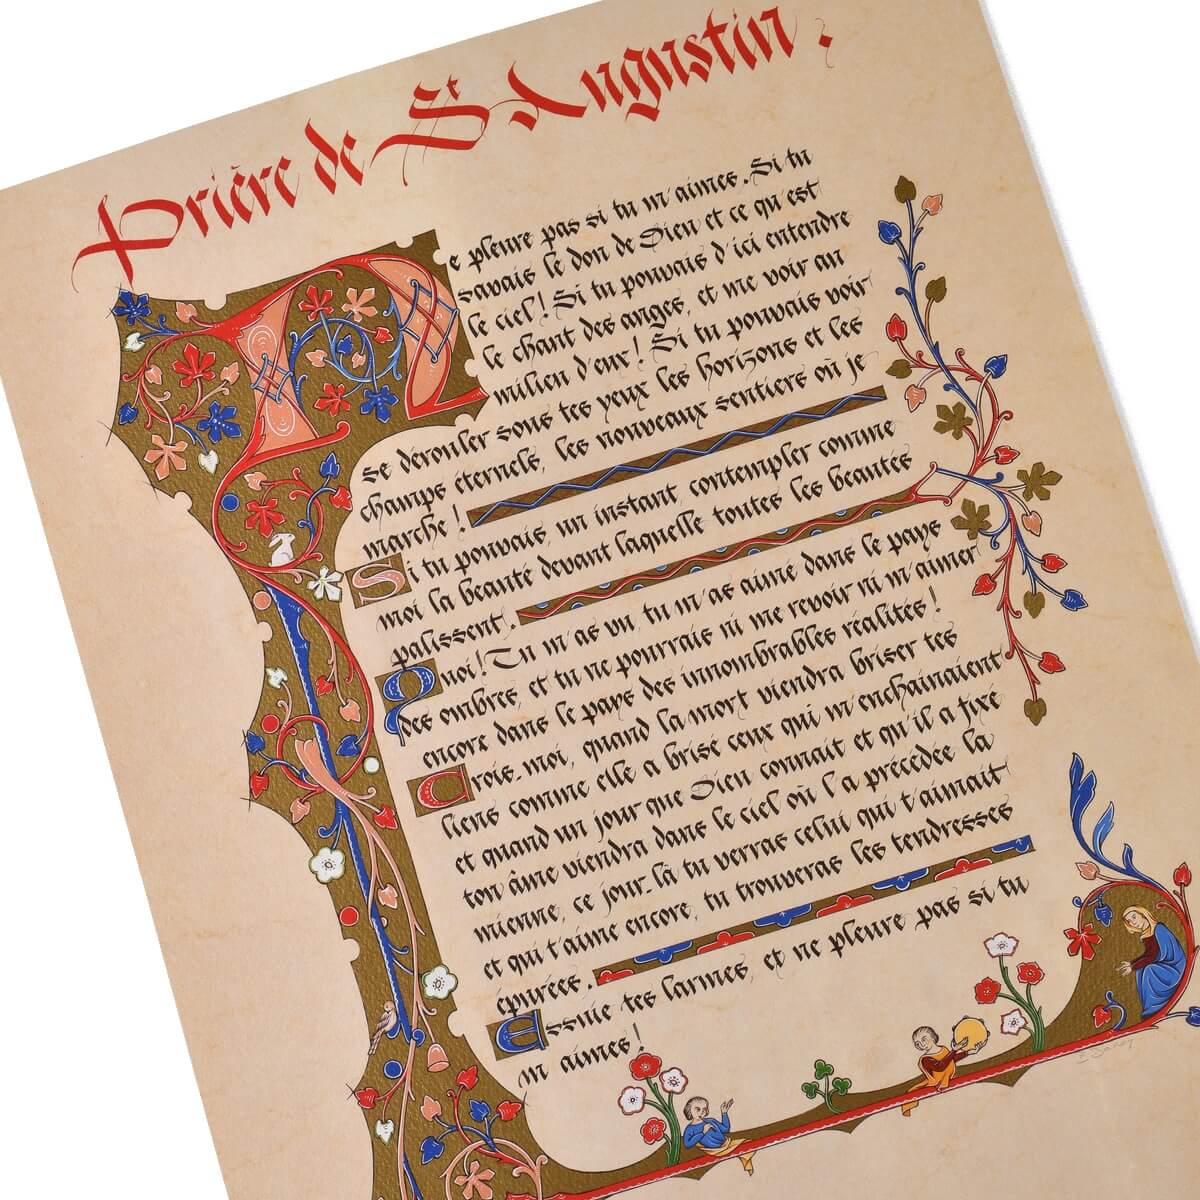 Détail calligraphie et enluminures de la prière de St Augustin